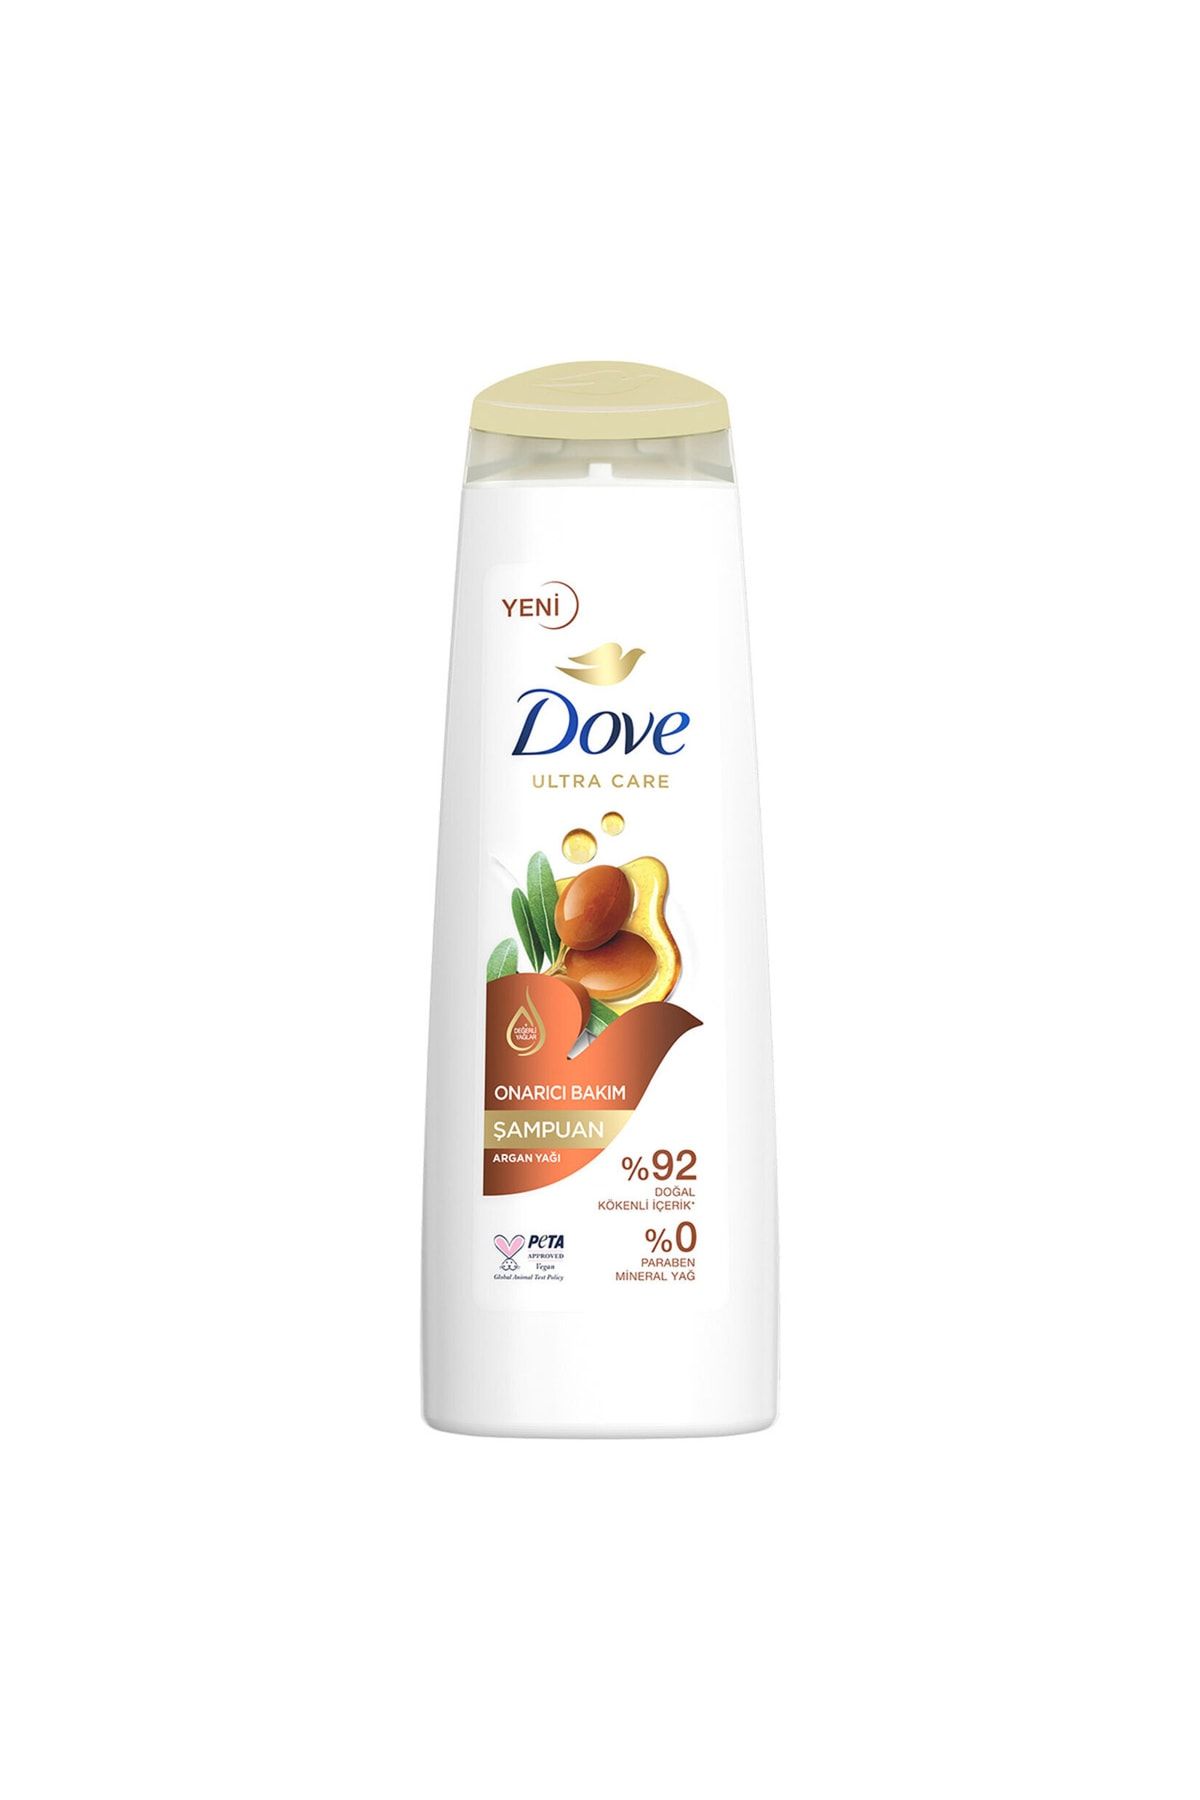 Dove Ultra Care Saç Bakım Şampuanı Onarıcı Bakım Argan Yağı 400 Ml